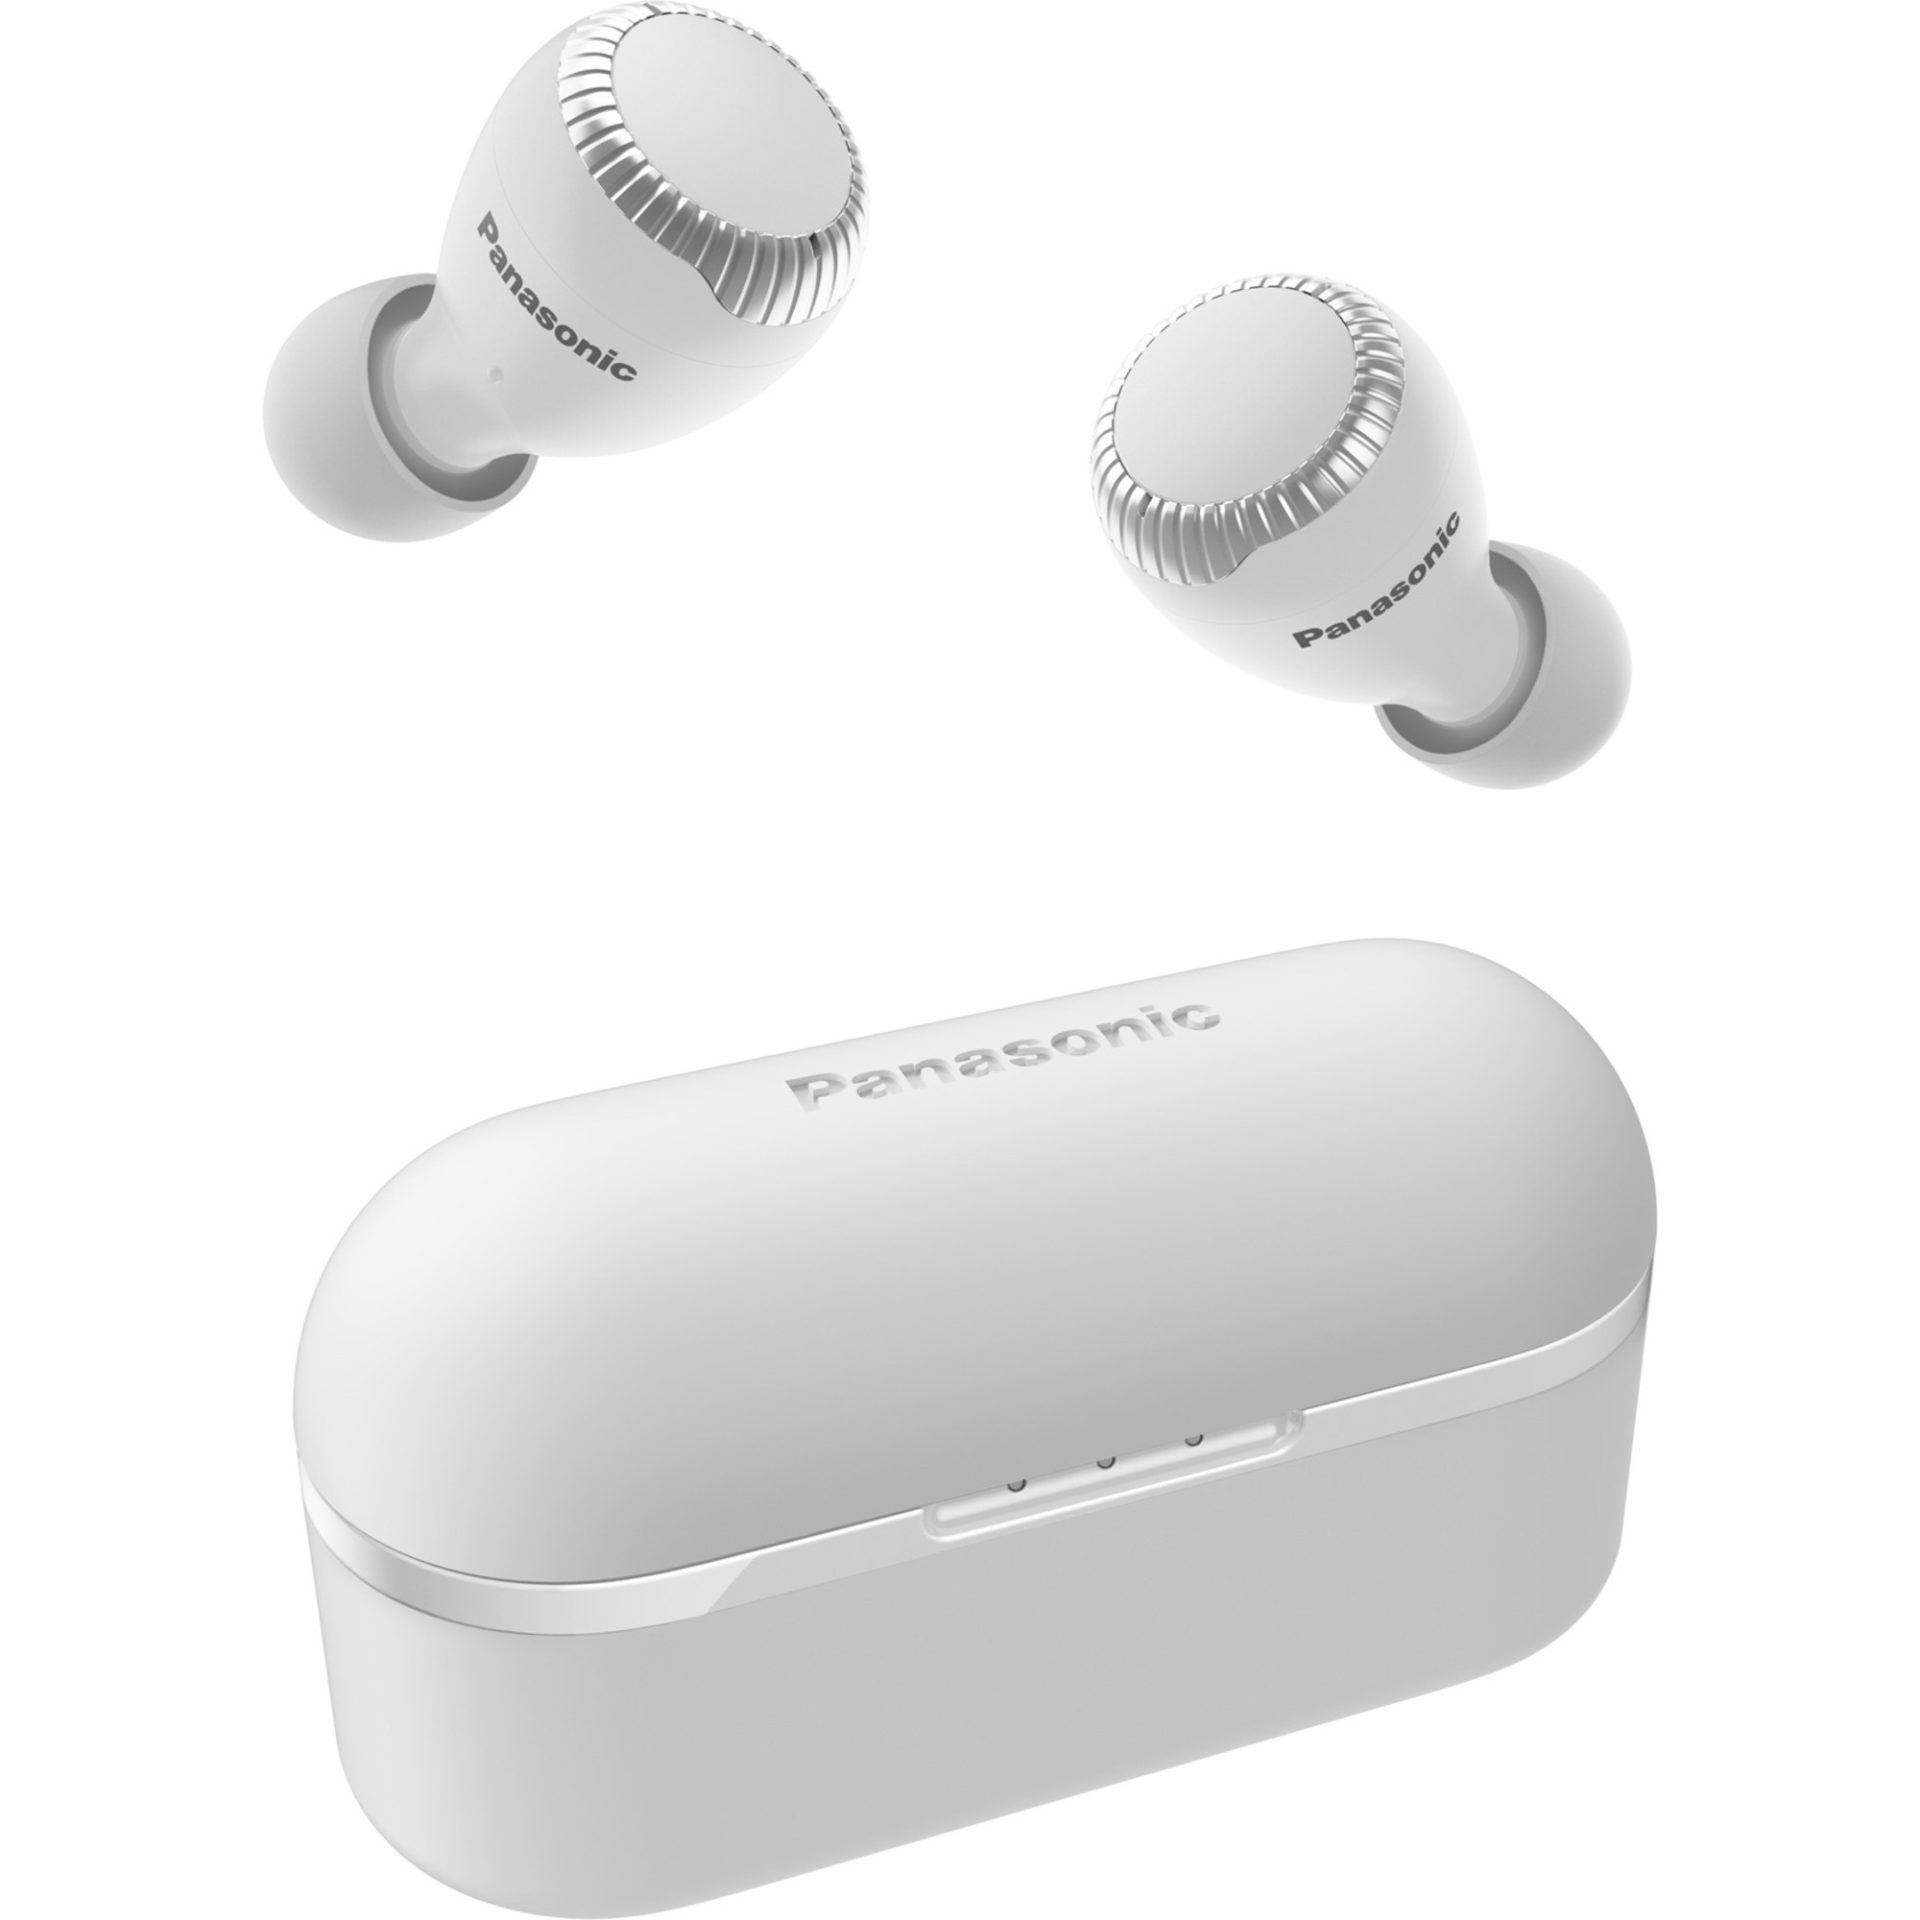 Panasonic RZ-S300 True Wireless Bluetooth sluchátka do uší (6 mikrofonů MEMS, 30h přehrávání s nabíjecím pouzdrem, IPX4 voděodolnost, dosah 10m), bílá